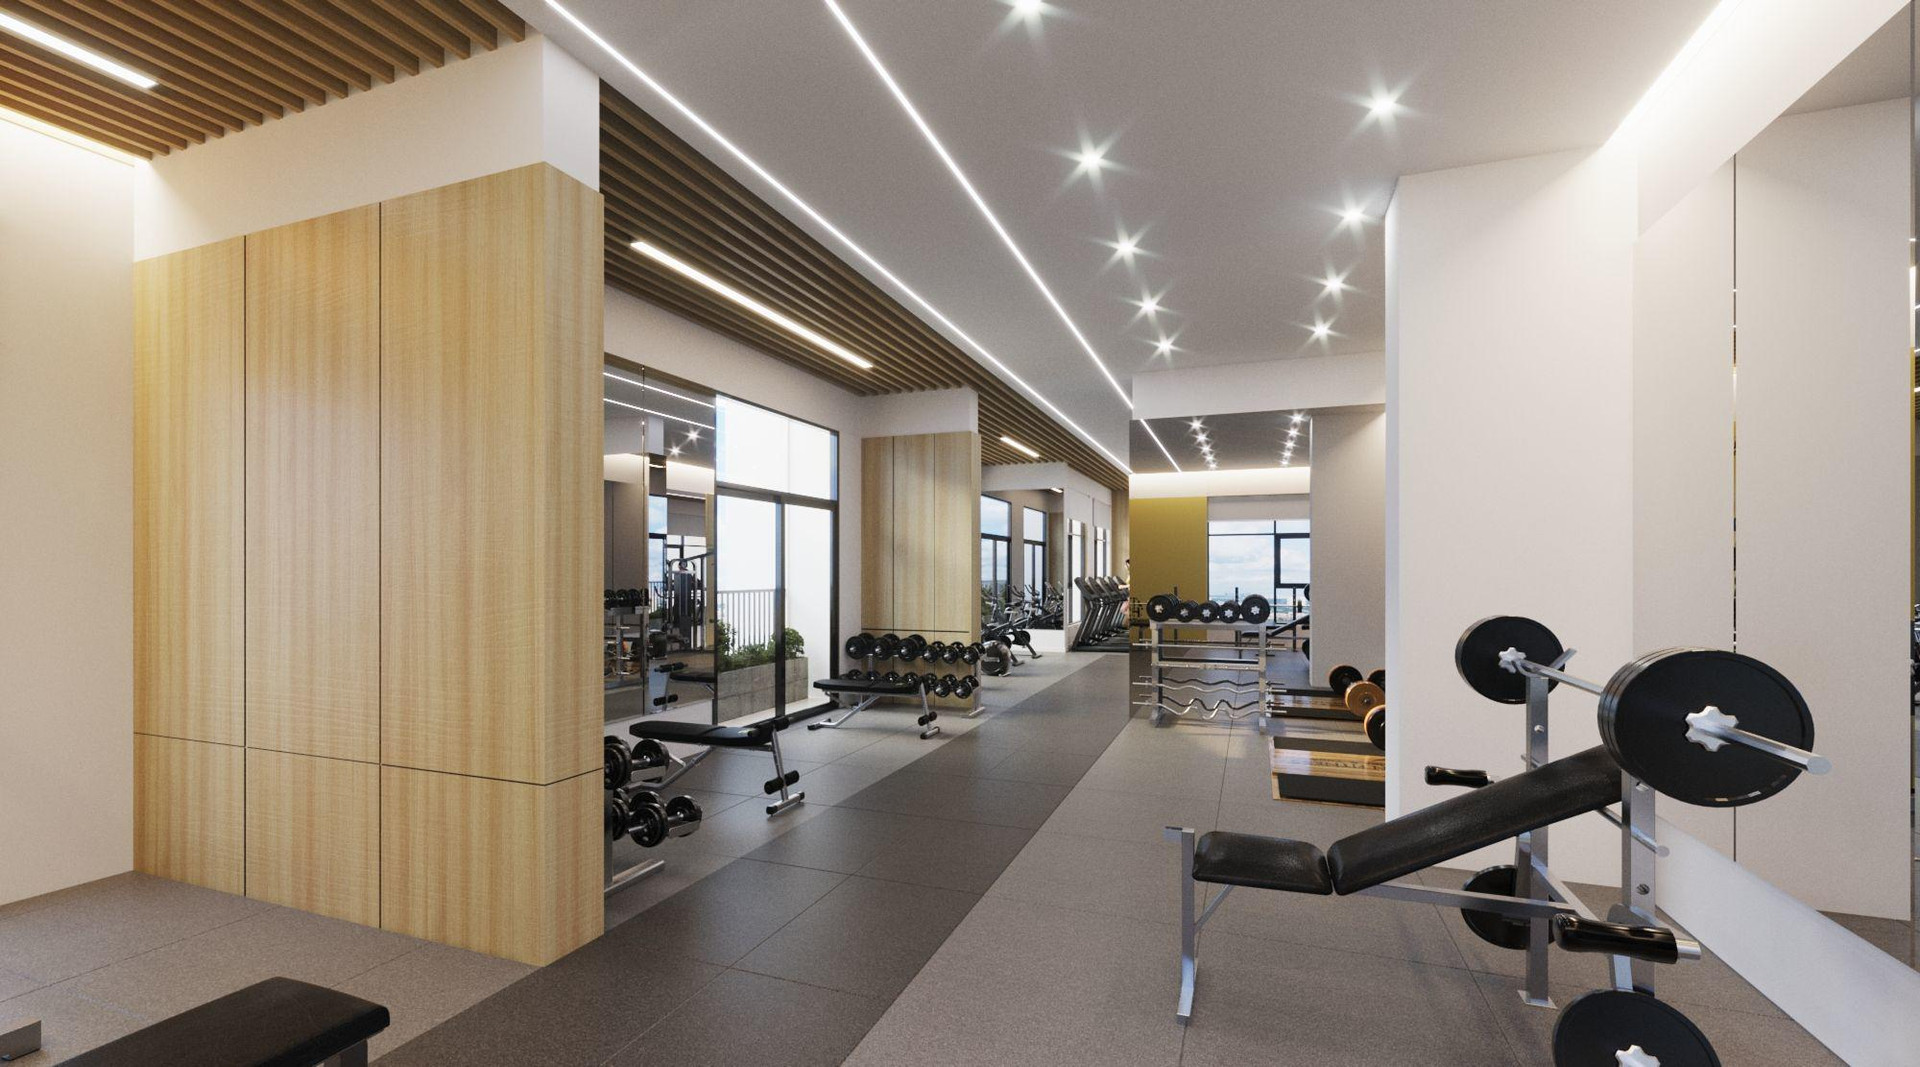 Khu Fitness Center của GS6 với phòng tập gym và yoga được thiết kế khoa học, tận dụng tối đa ánh sáng tự nhiên và tầm view rộng mở